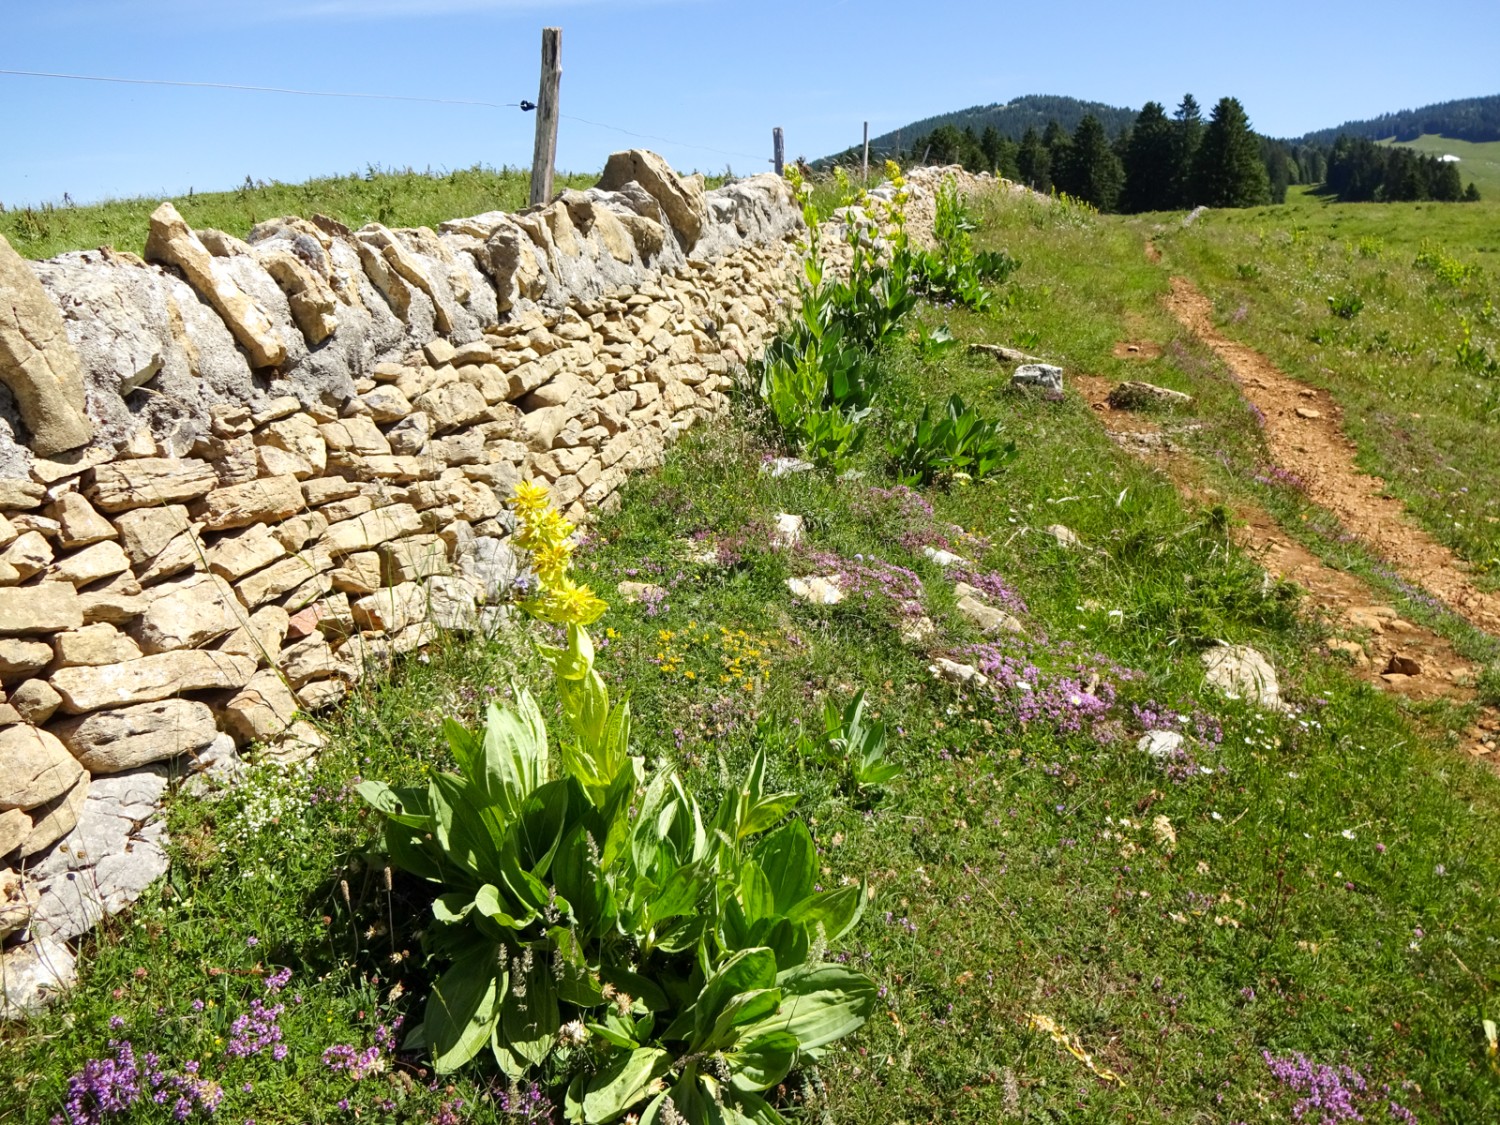 Trockensteinmauern sind charakteristisch für die Region. Bild: Miroslaw Halaba